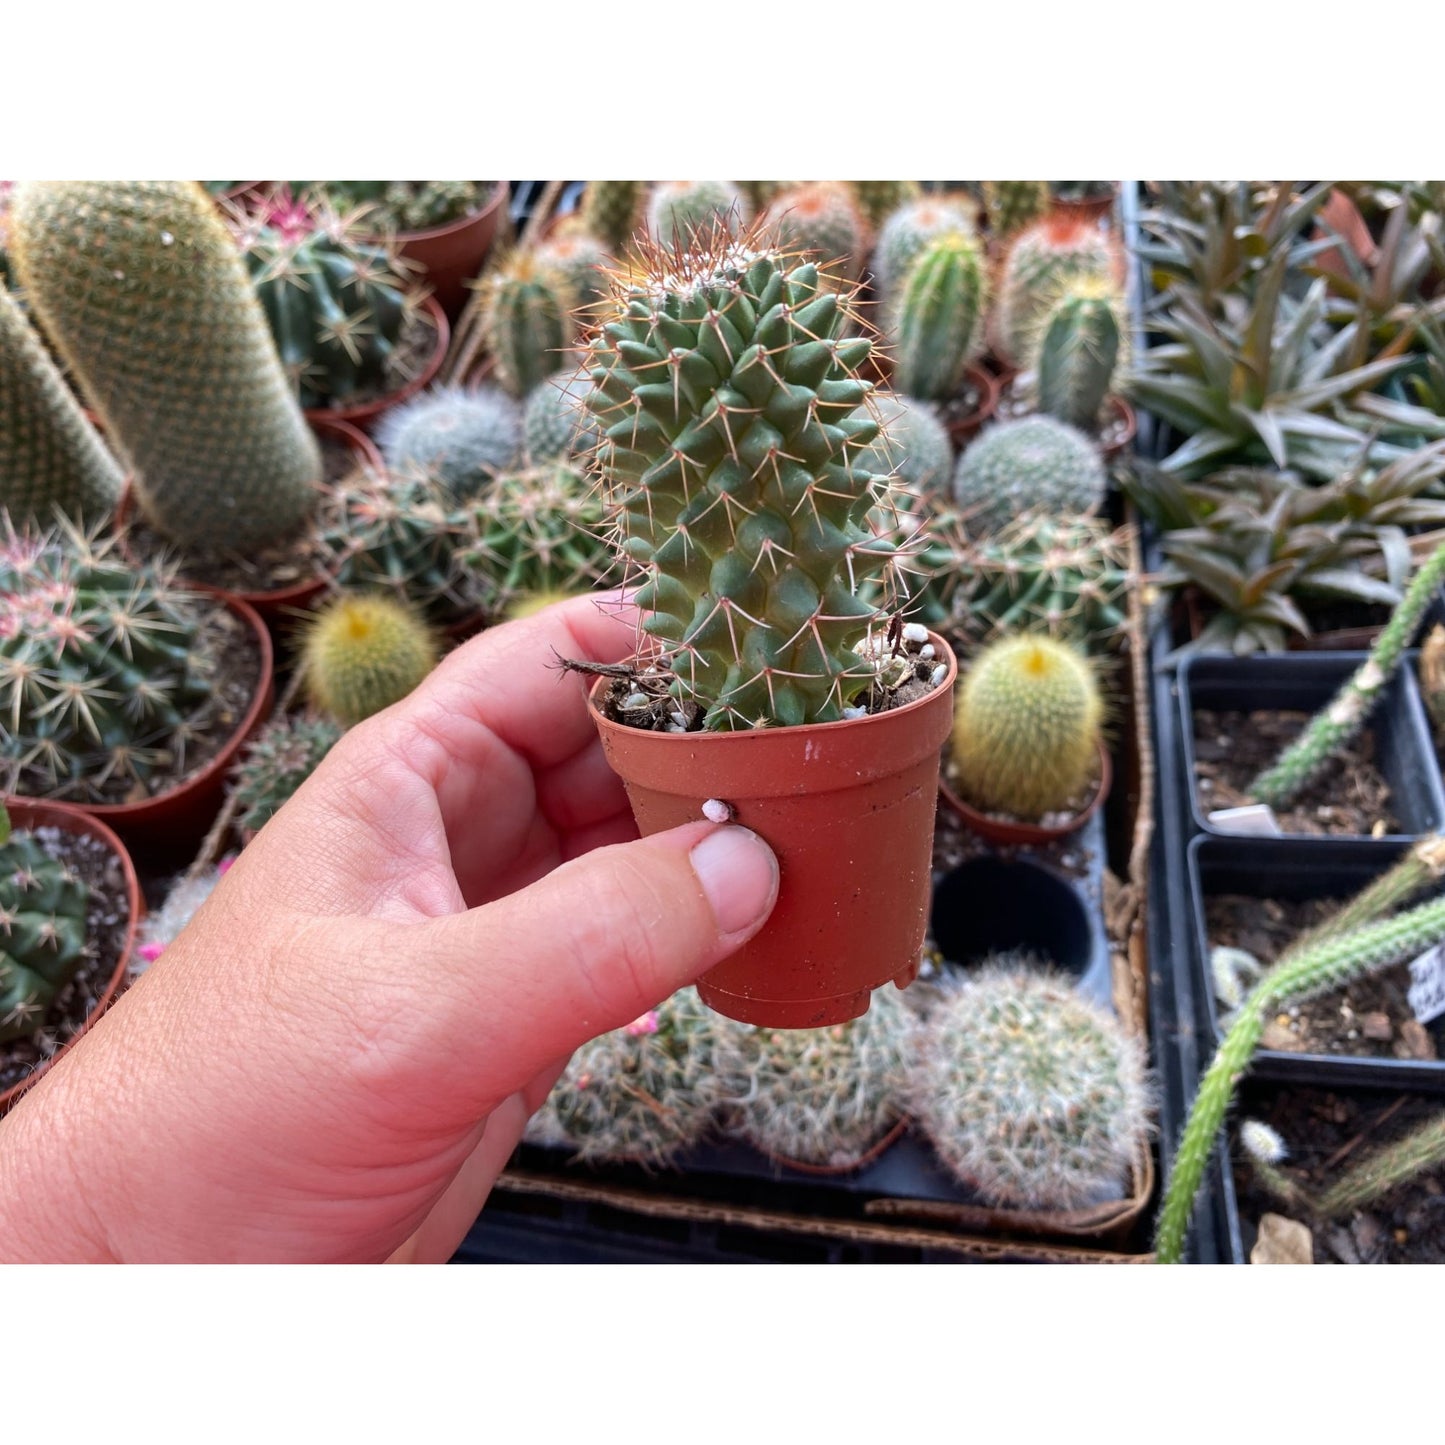 Cactus Toluca Mammillaria polythele 3" Pot Live Plant